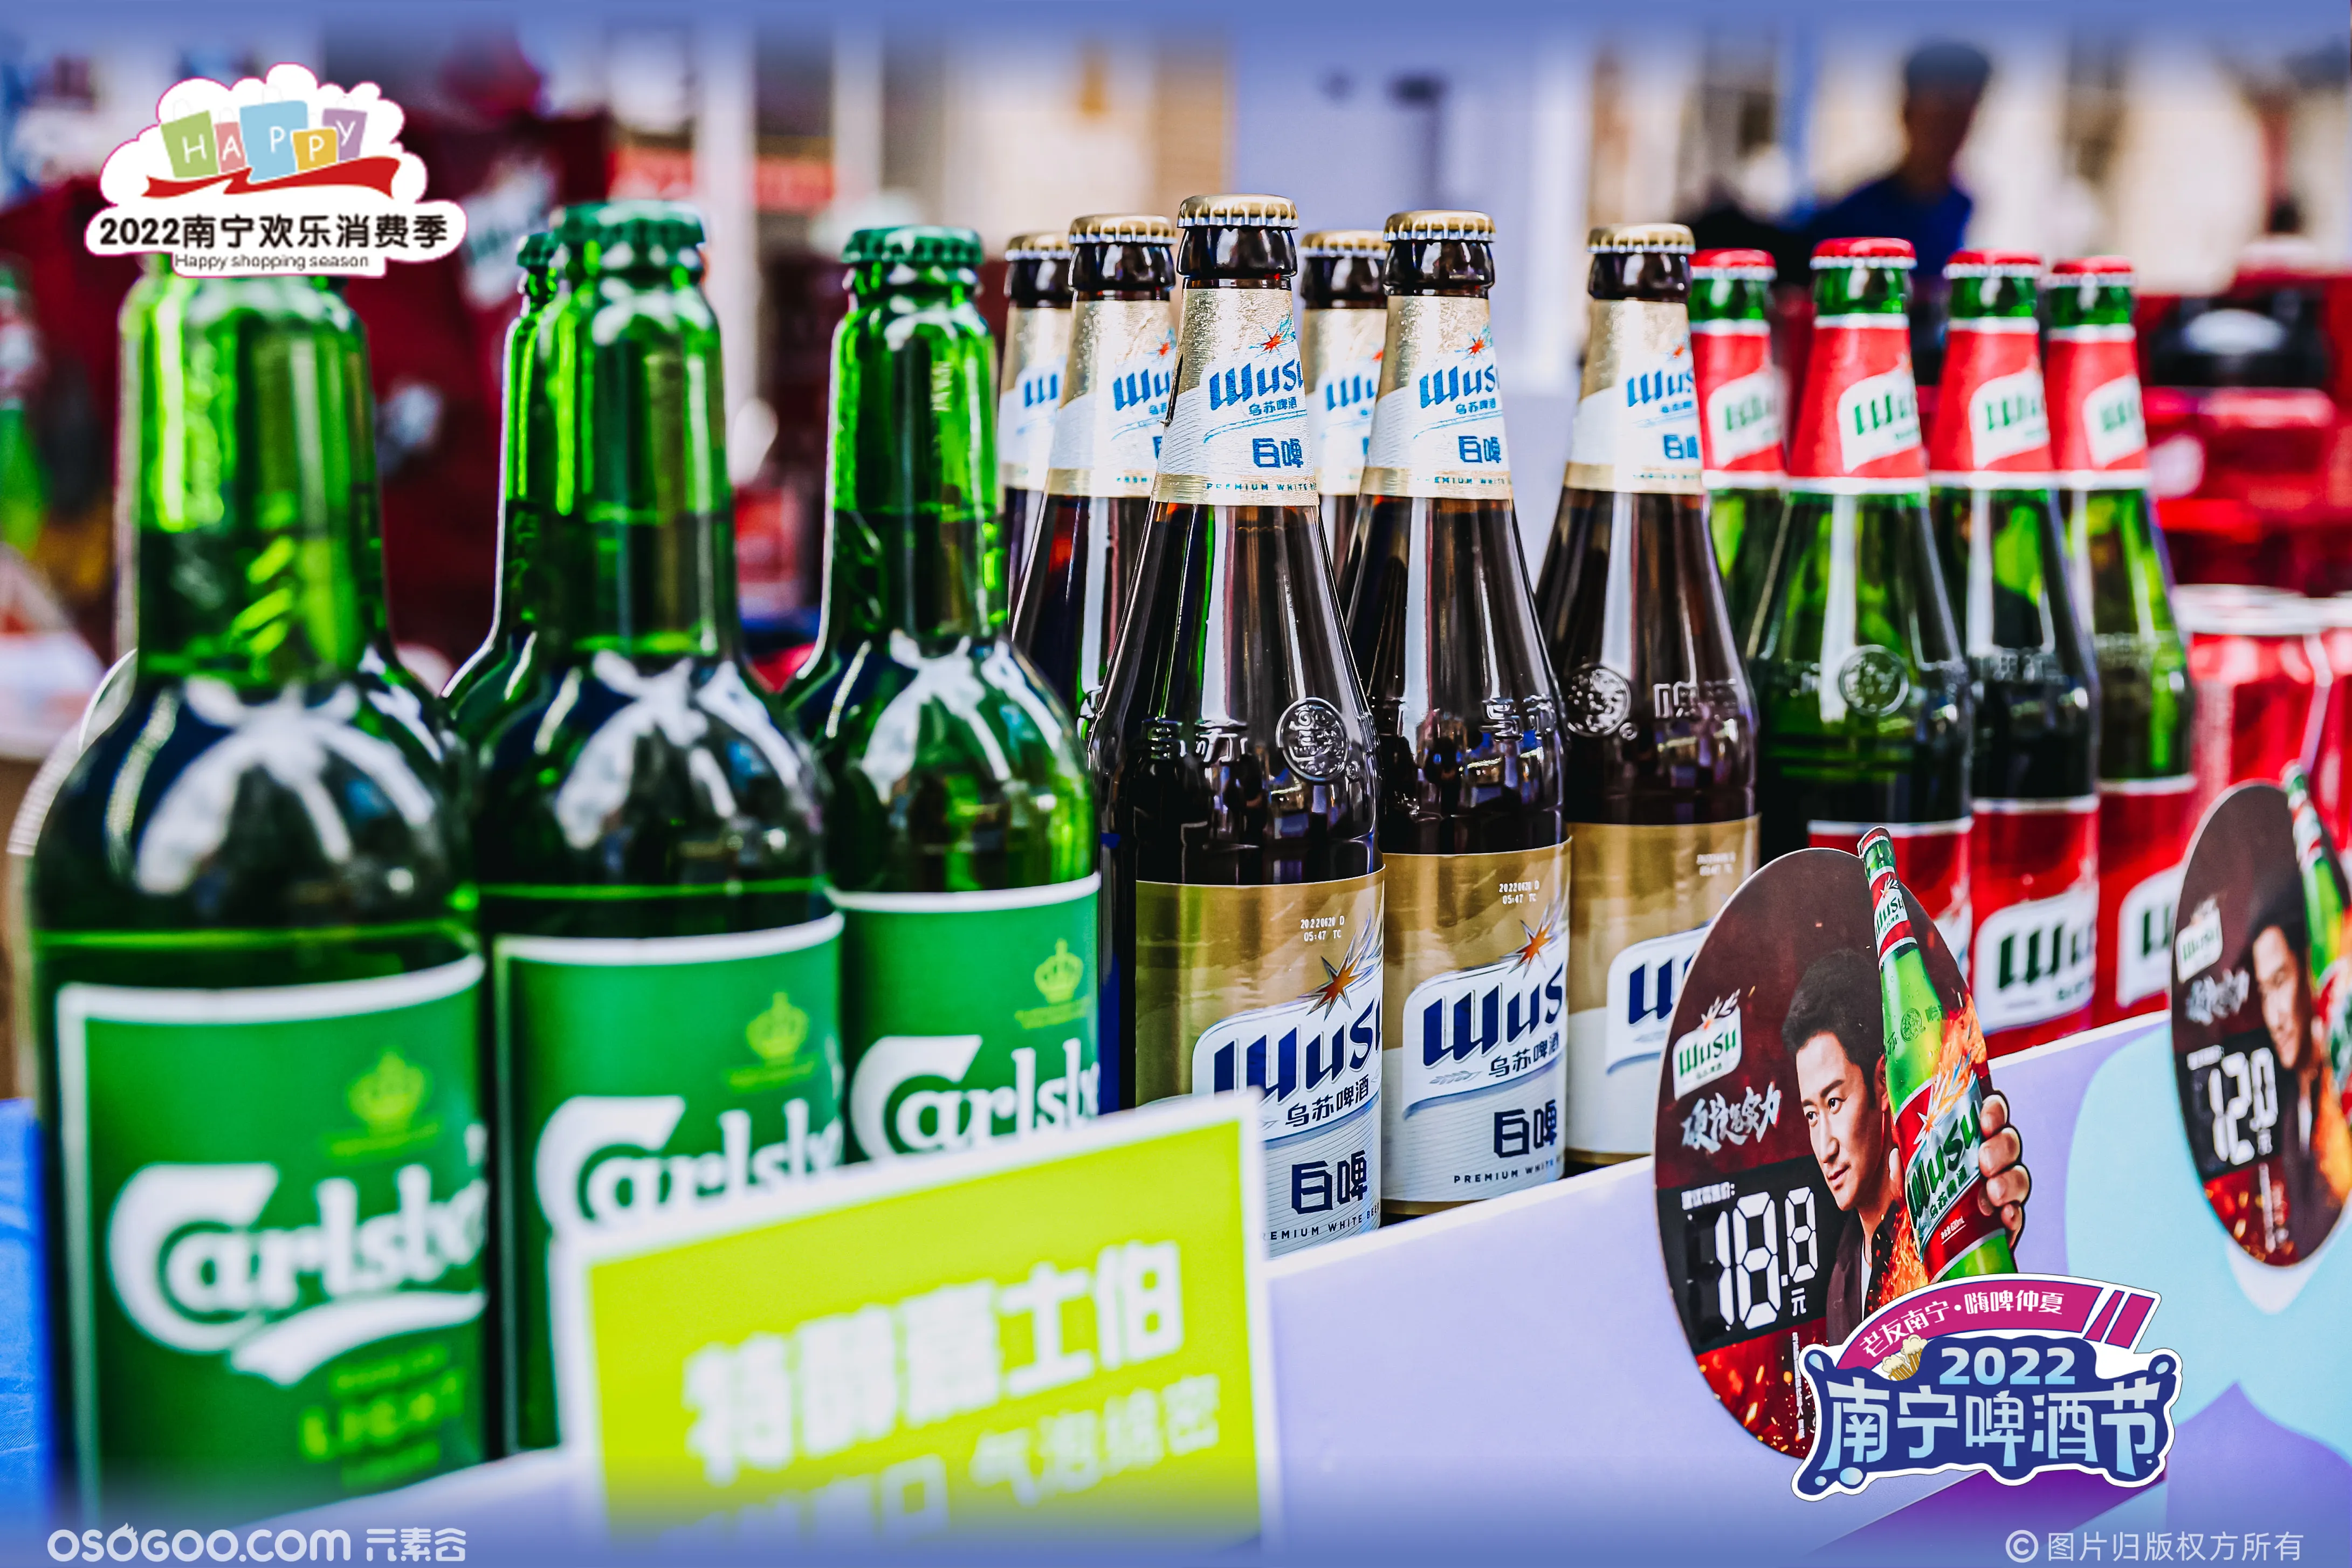 2022南宁啤酒节 | 老友南宁 嗨啤仲夏 